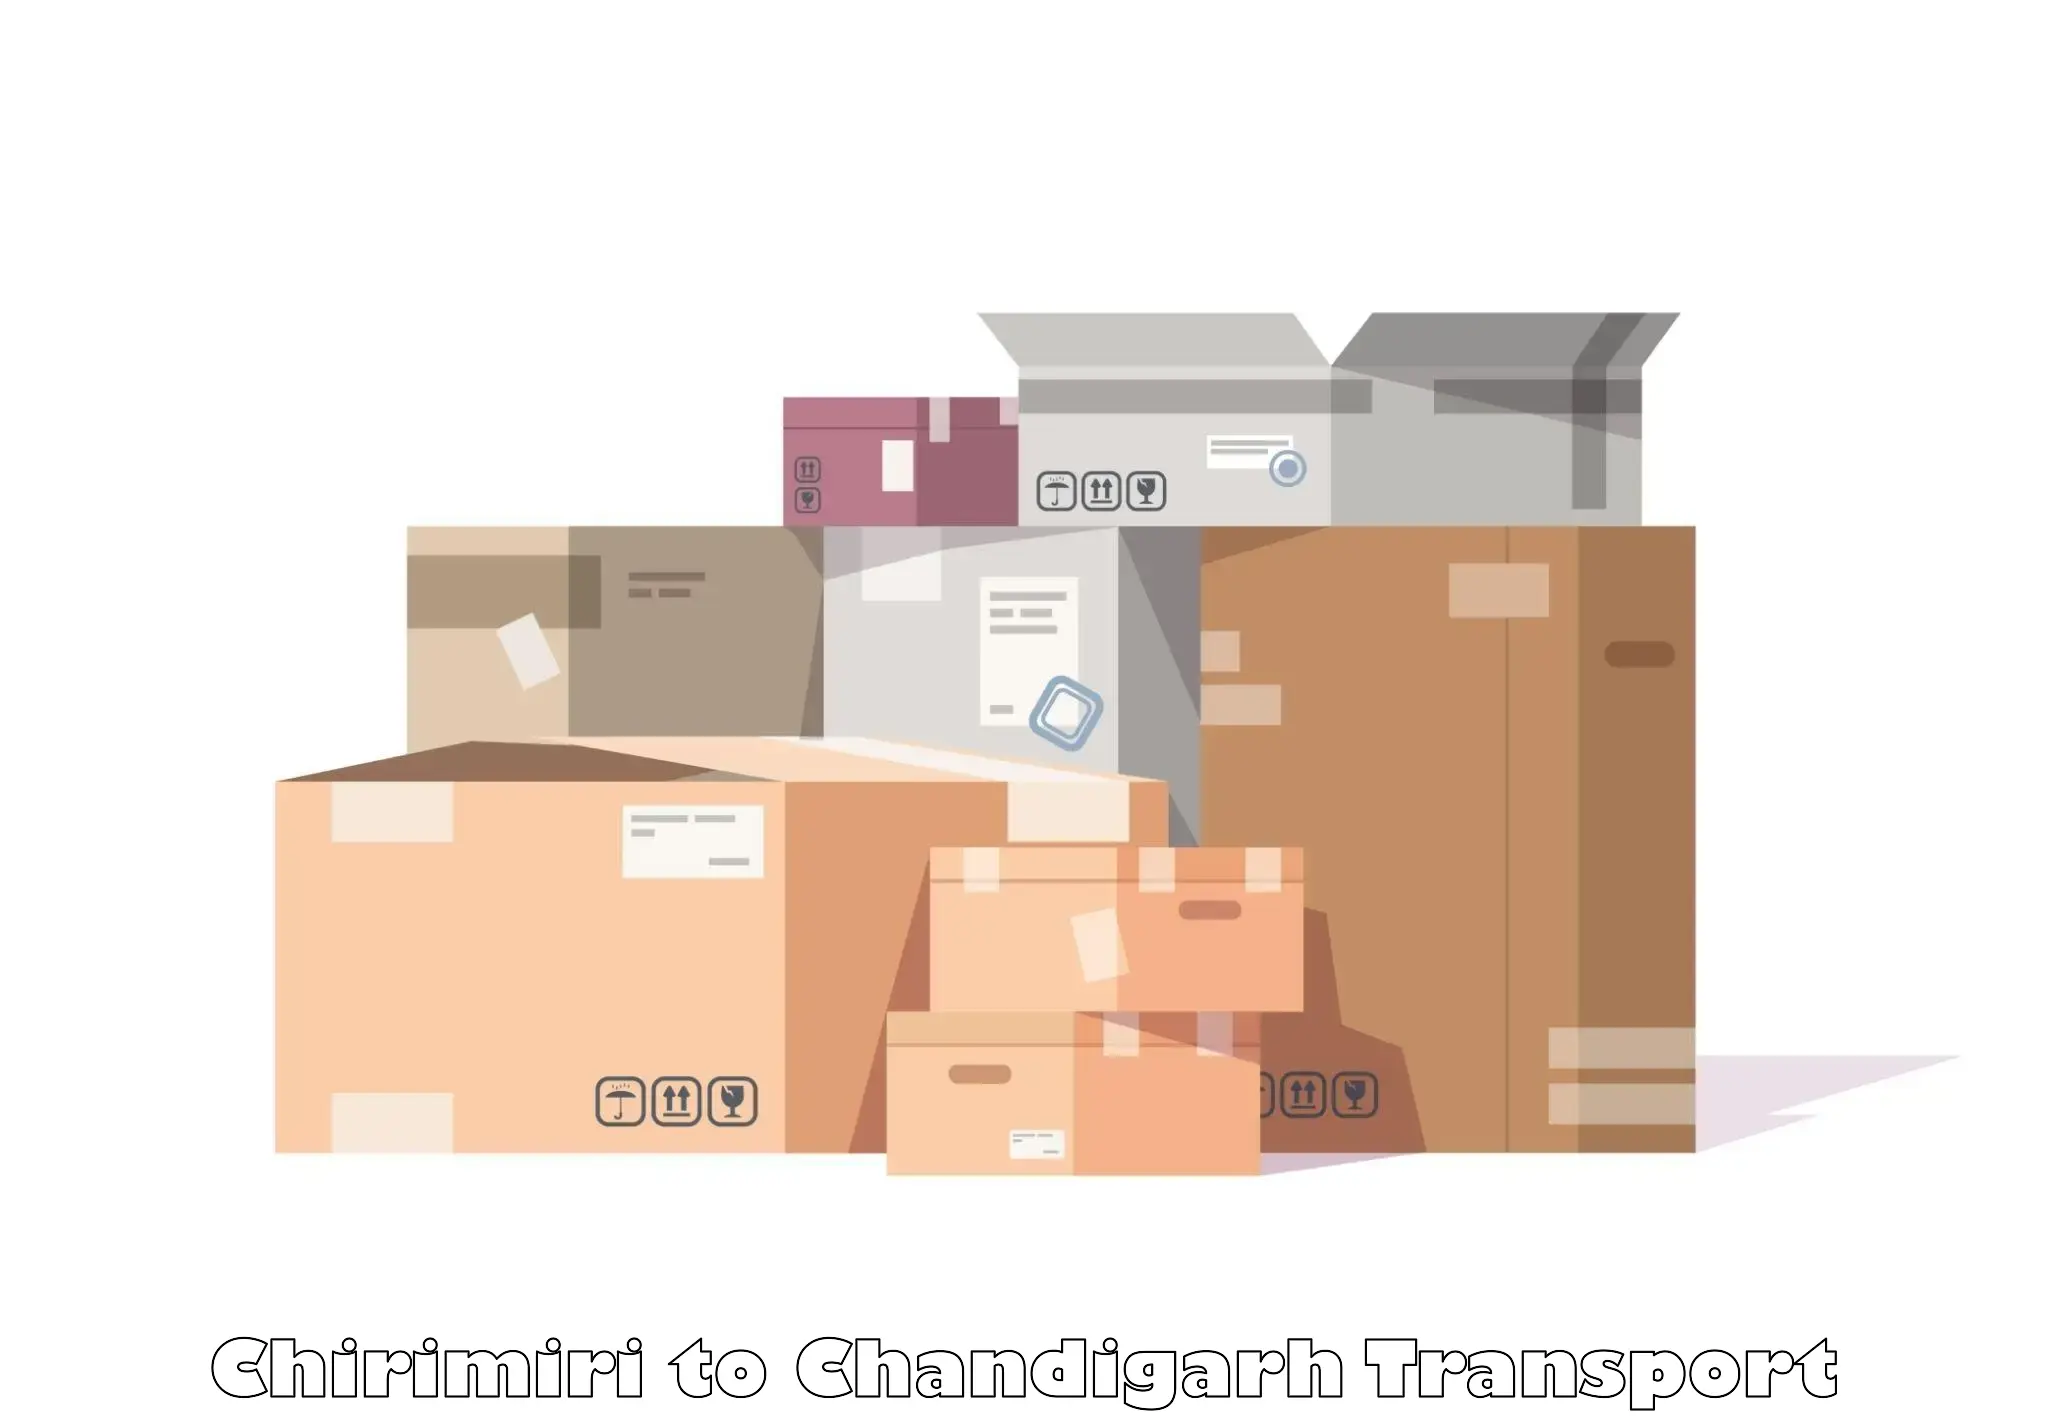 Transport shared services Chirimiri to Chandigarh